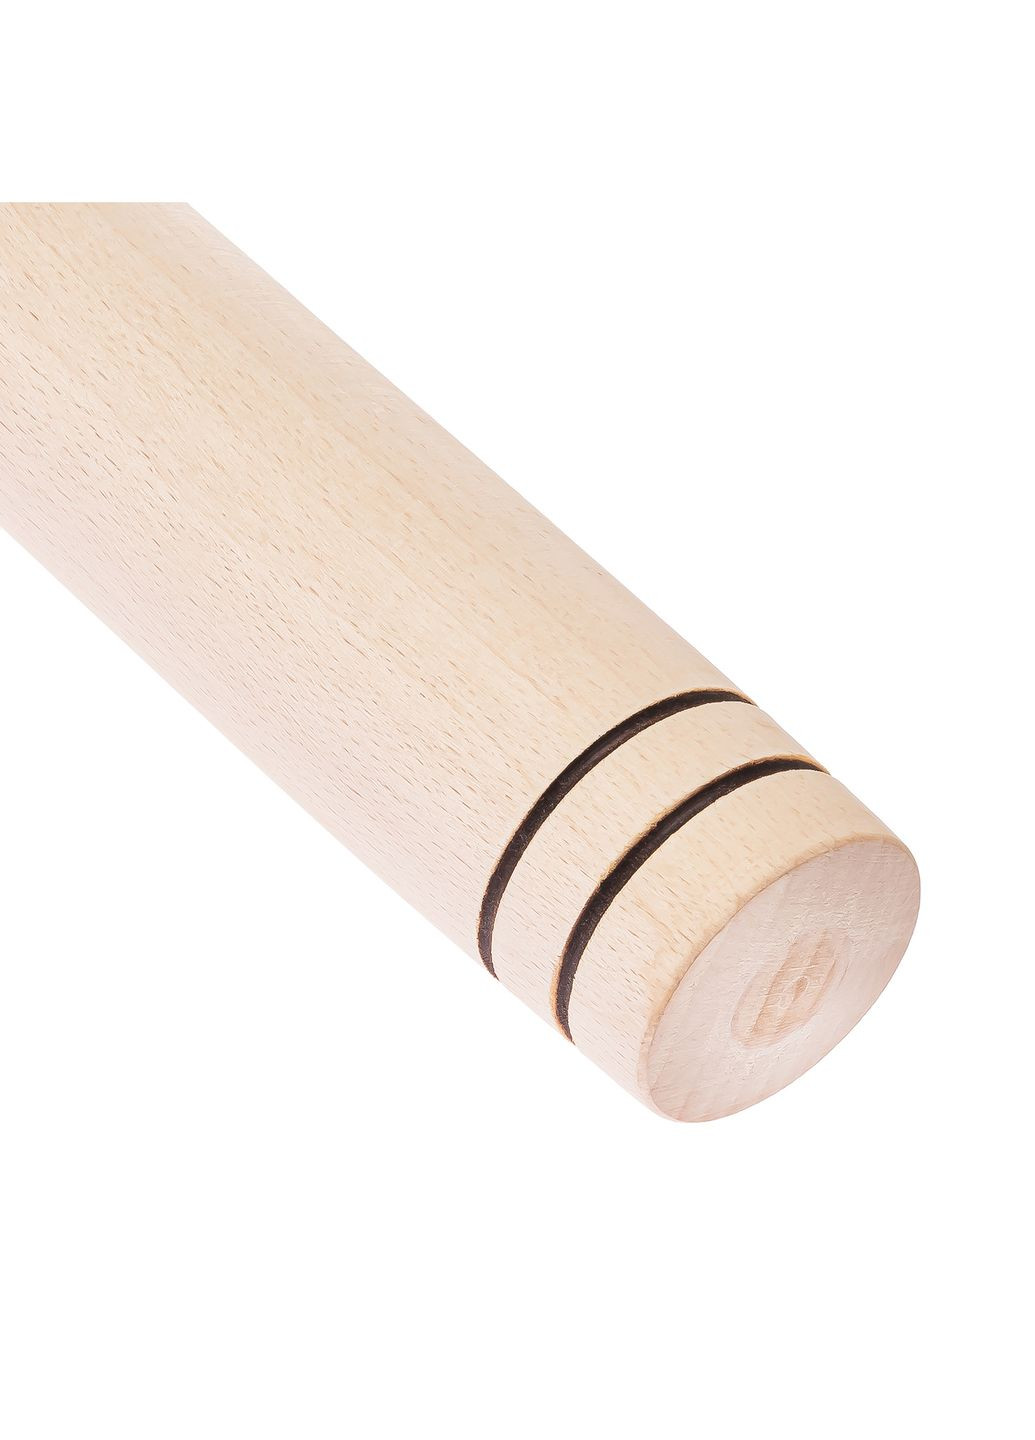 Скалка качалка деревянная ровная для пельменей 39 см Ø 4.5 см "Люкс" Woodly (260023489)